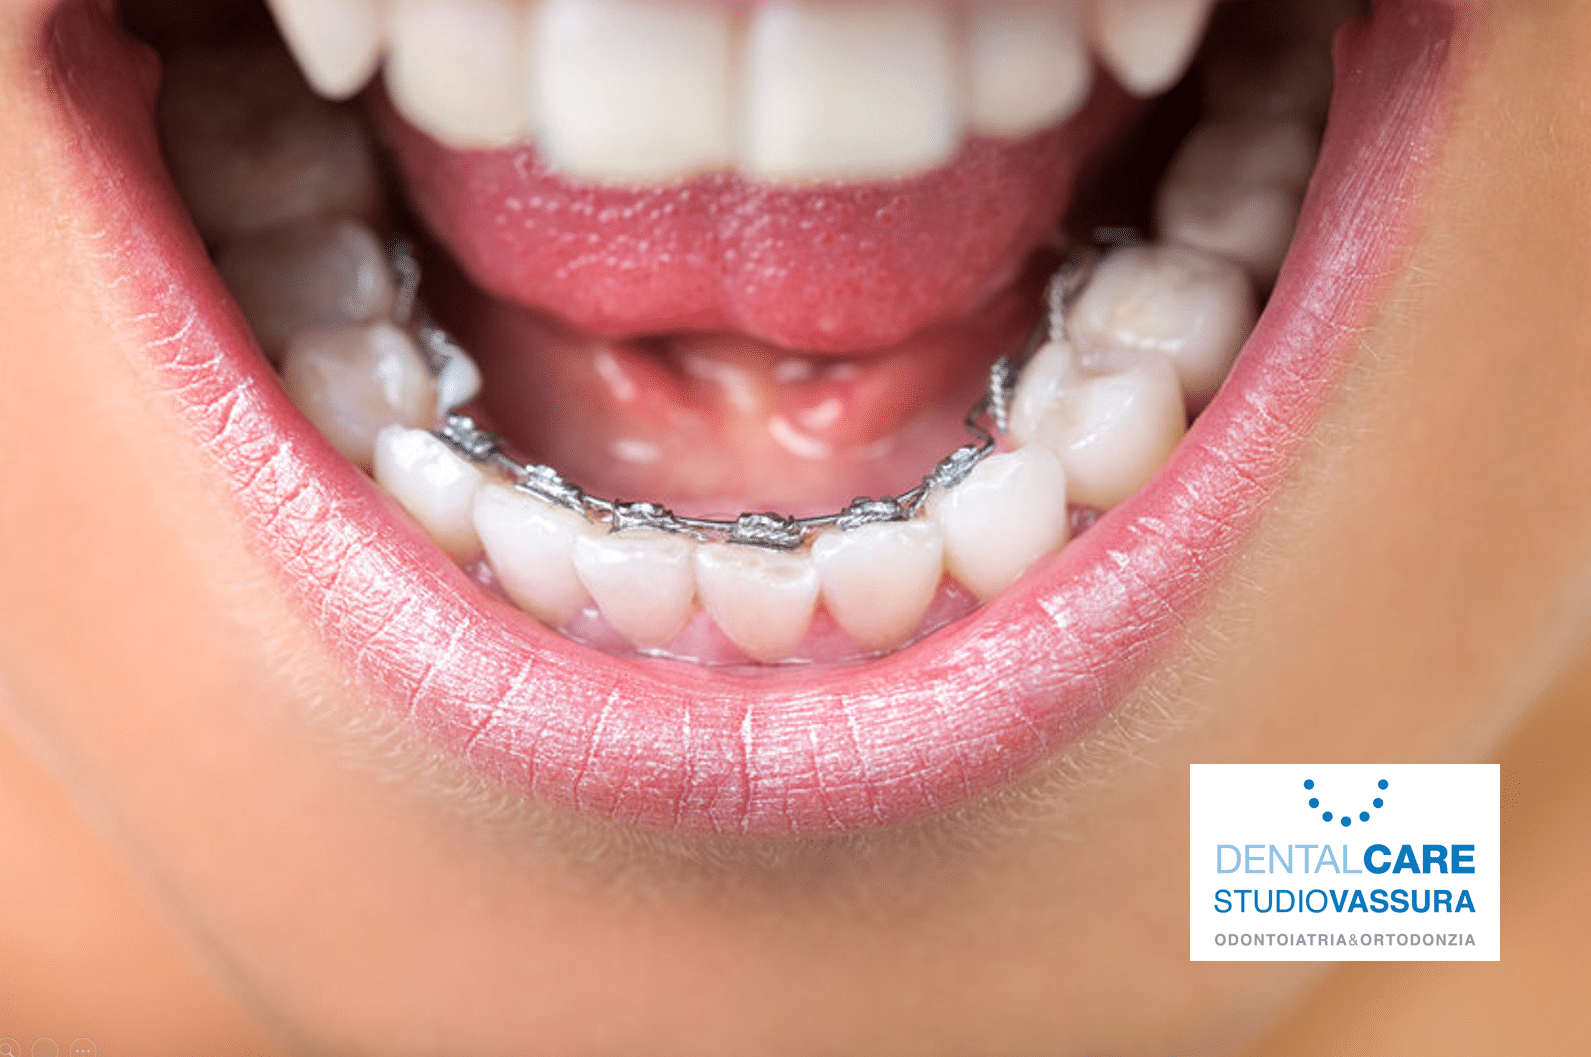 apparecchio ortodontico linguale